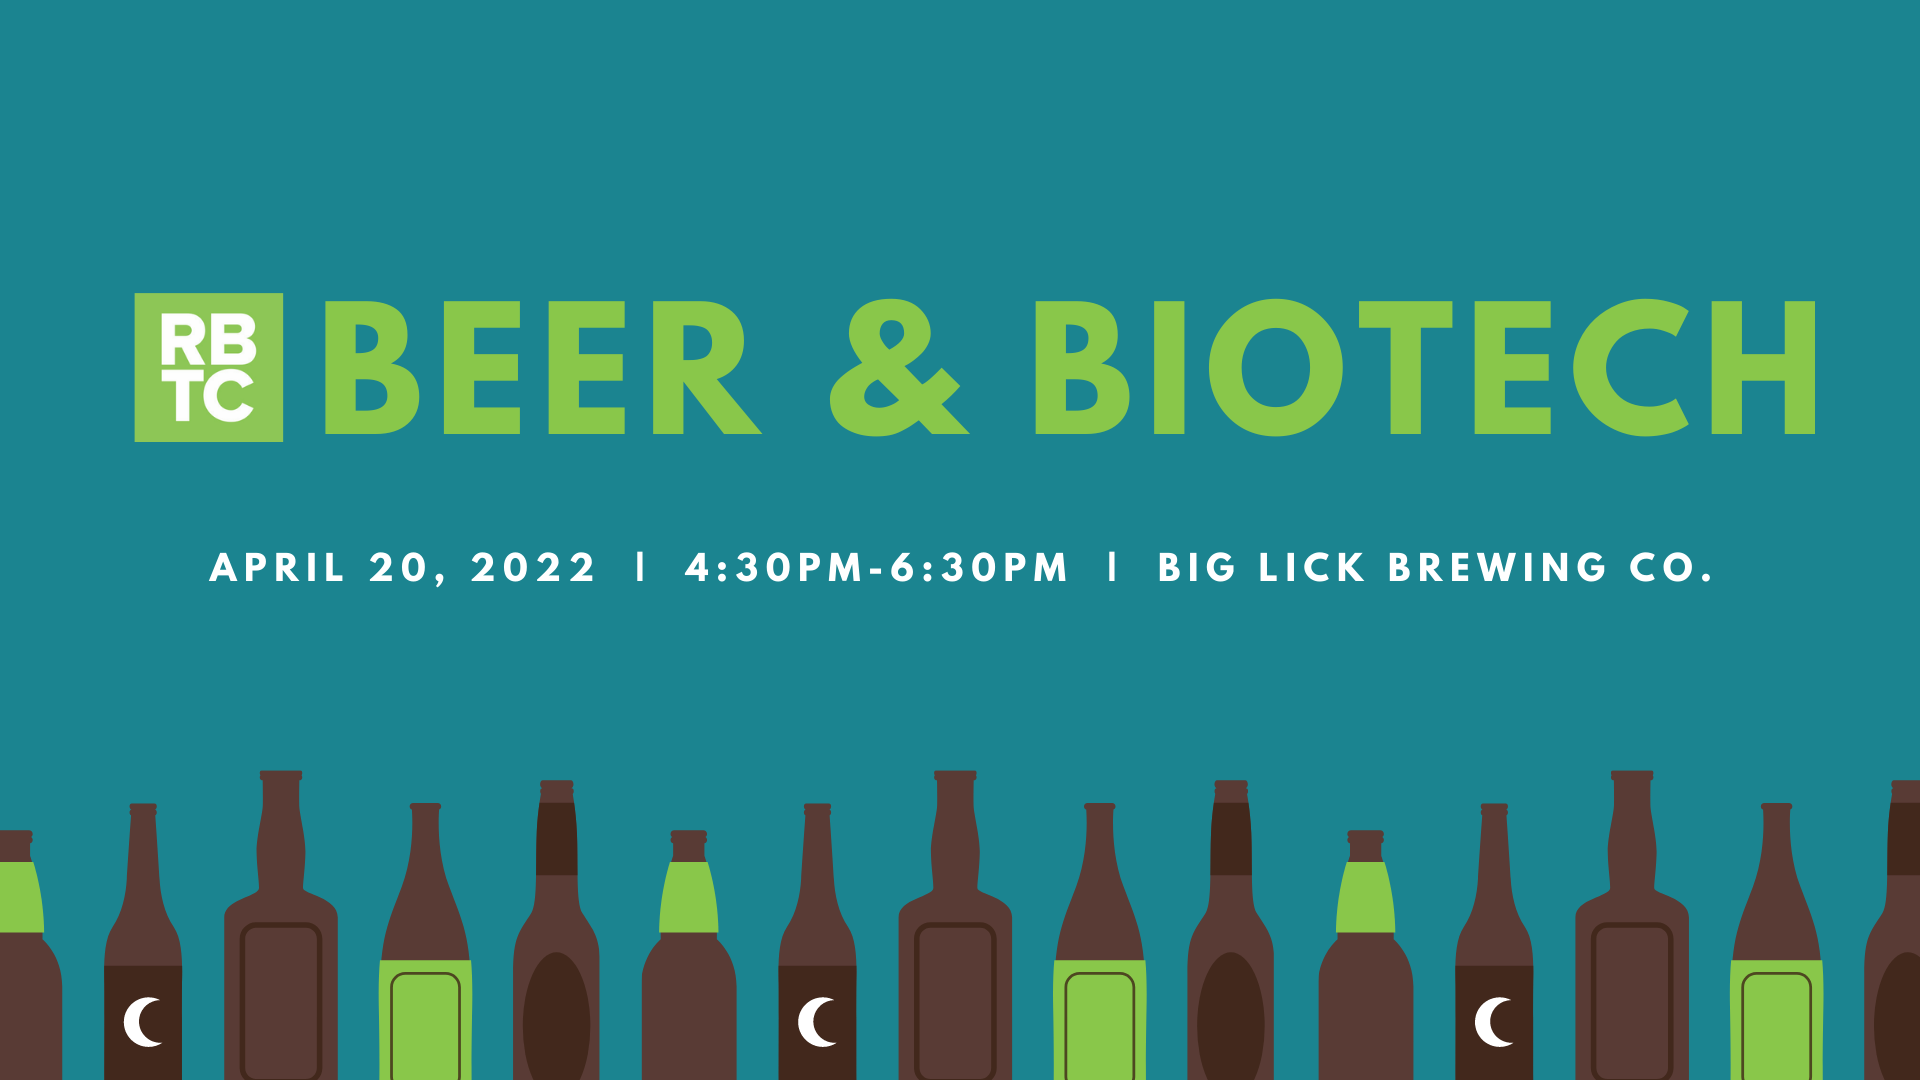 Beer & Biotech April